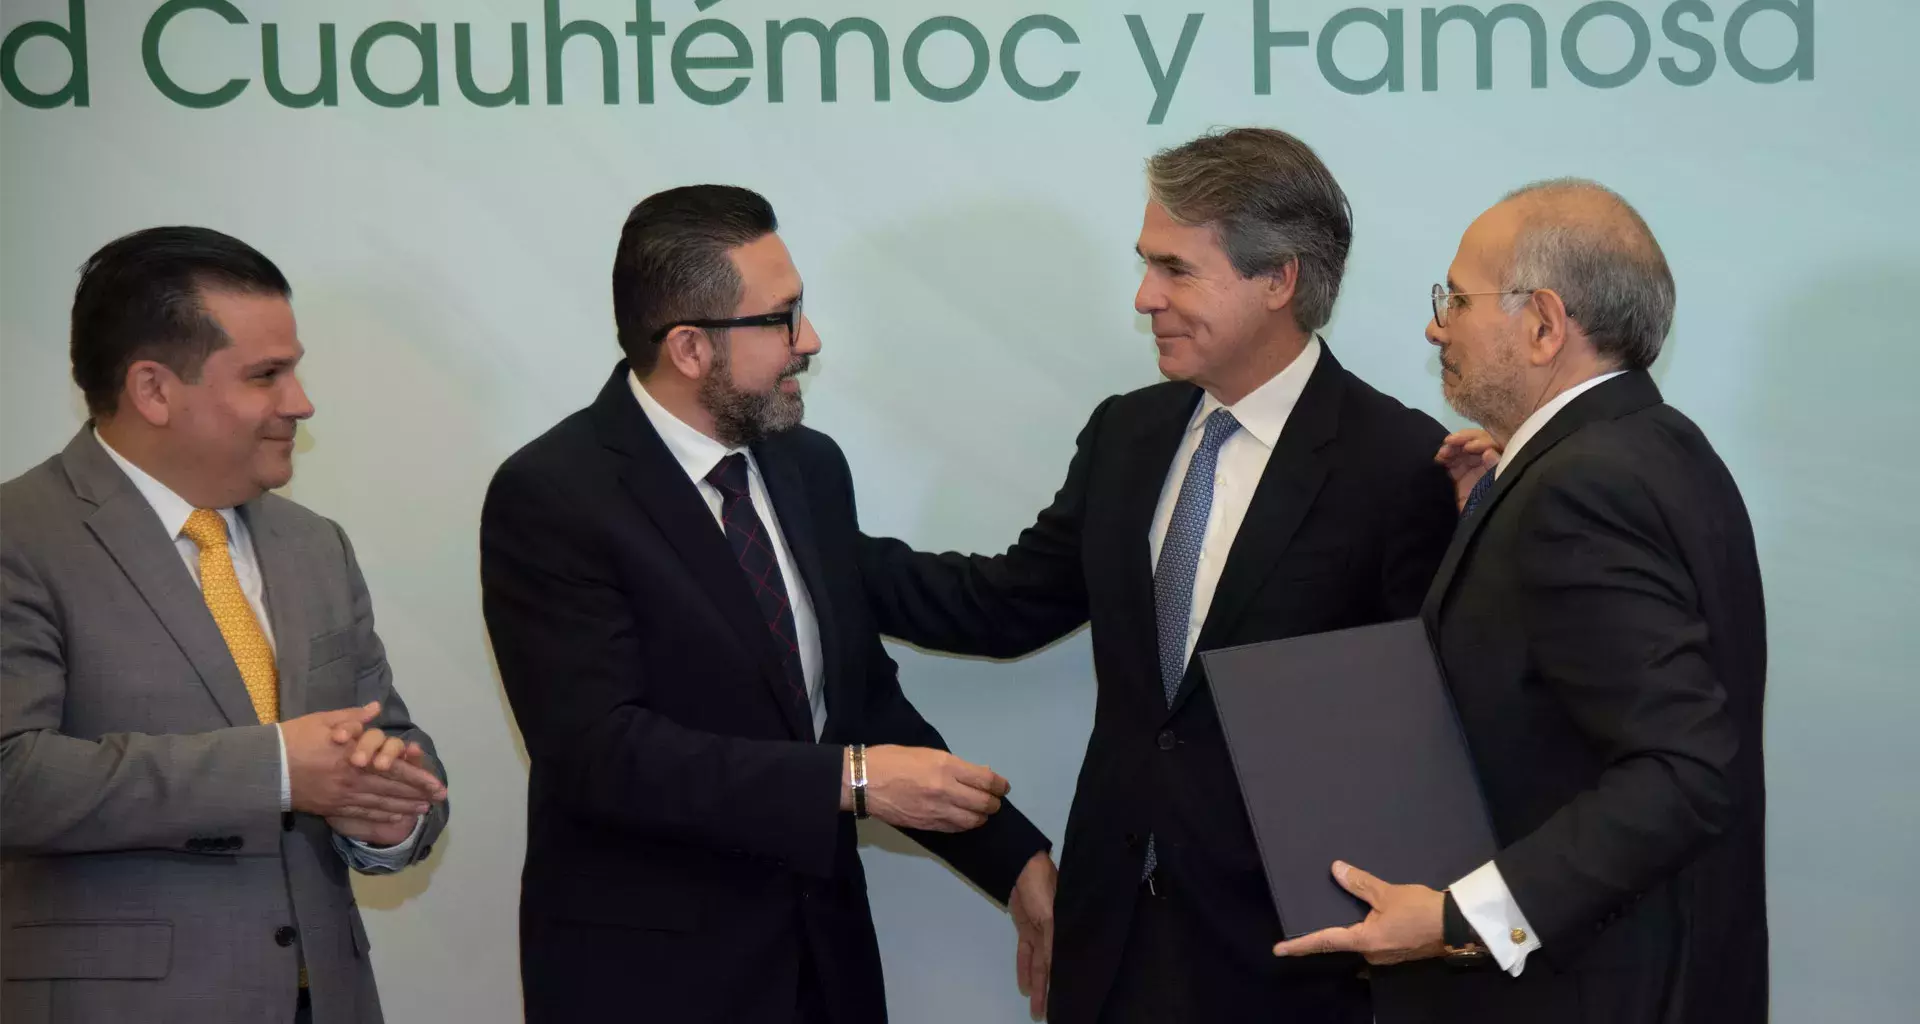 TecSalud firmó convenio de colaboración con Sociedad Cuauhtémoc y Famosa en pro de la salud regiomontana.